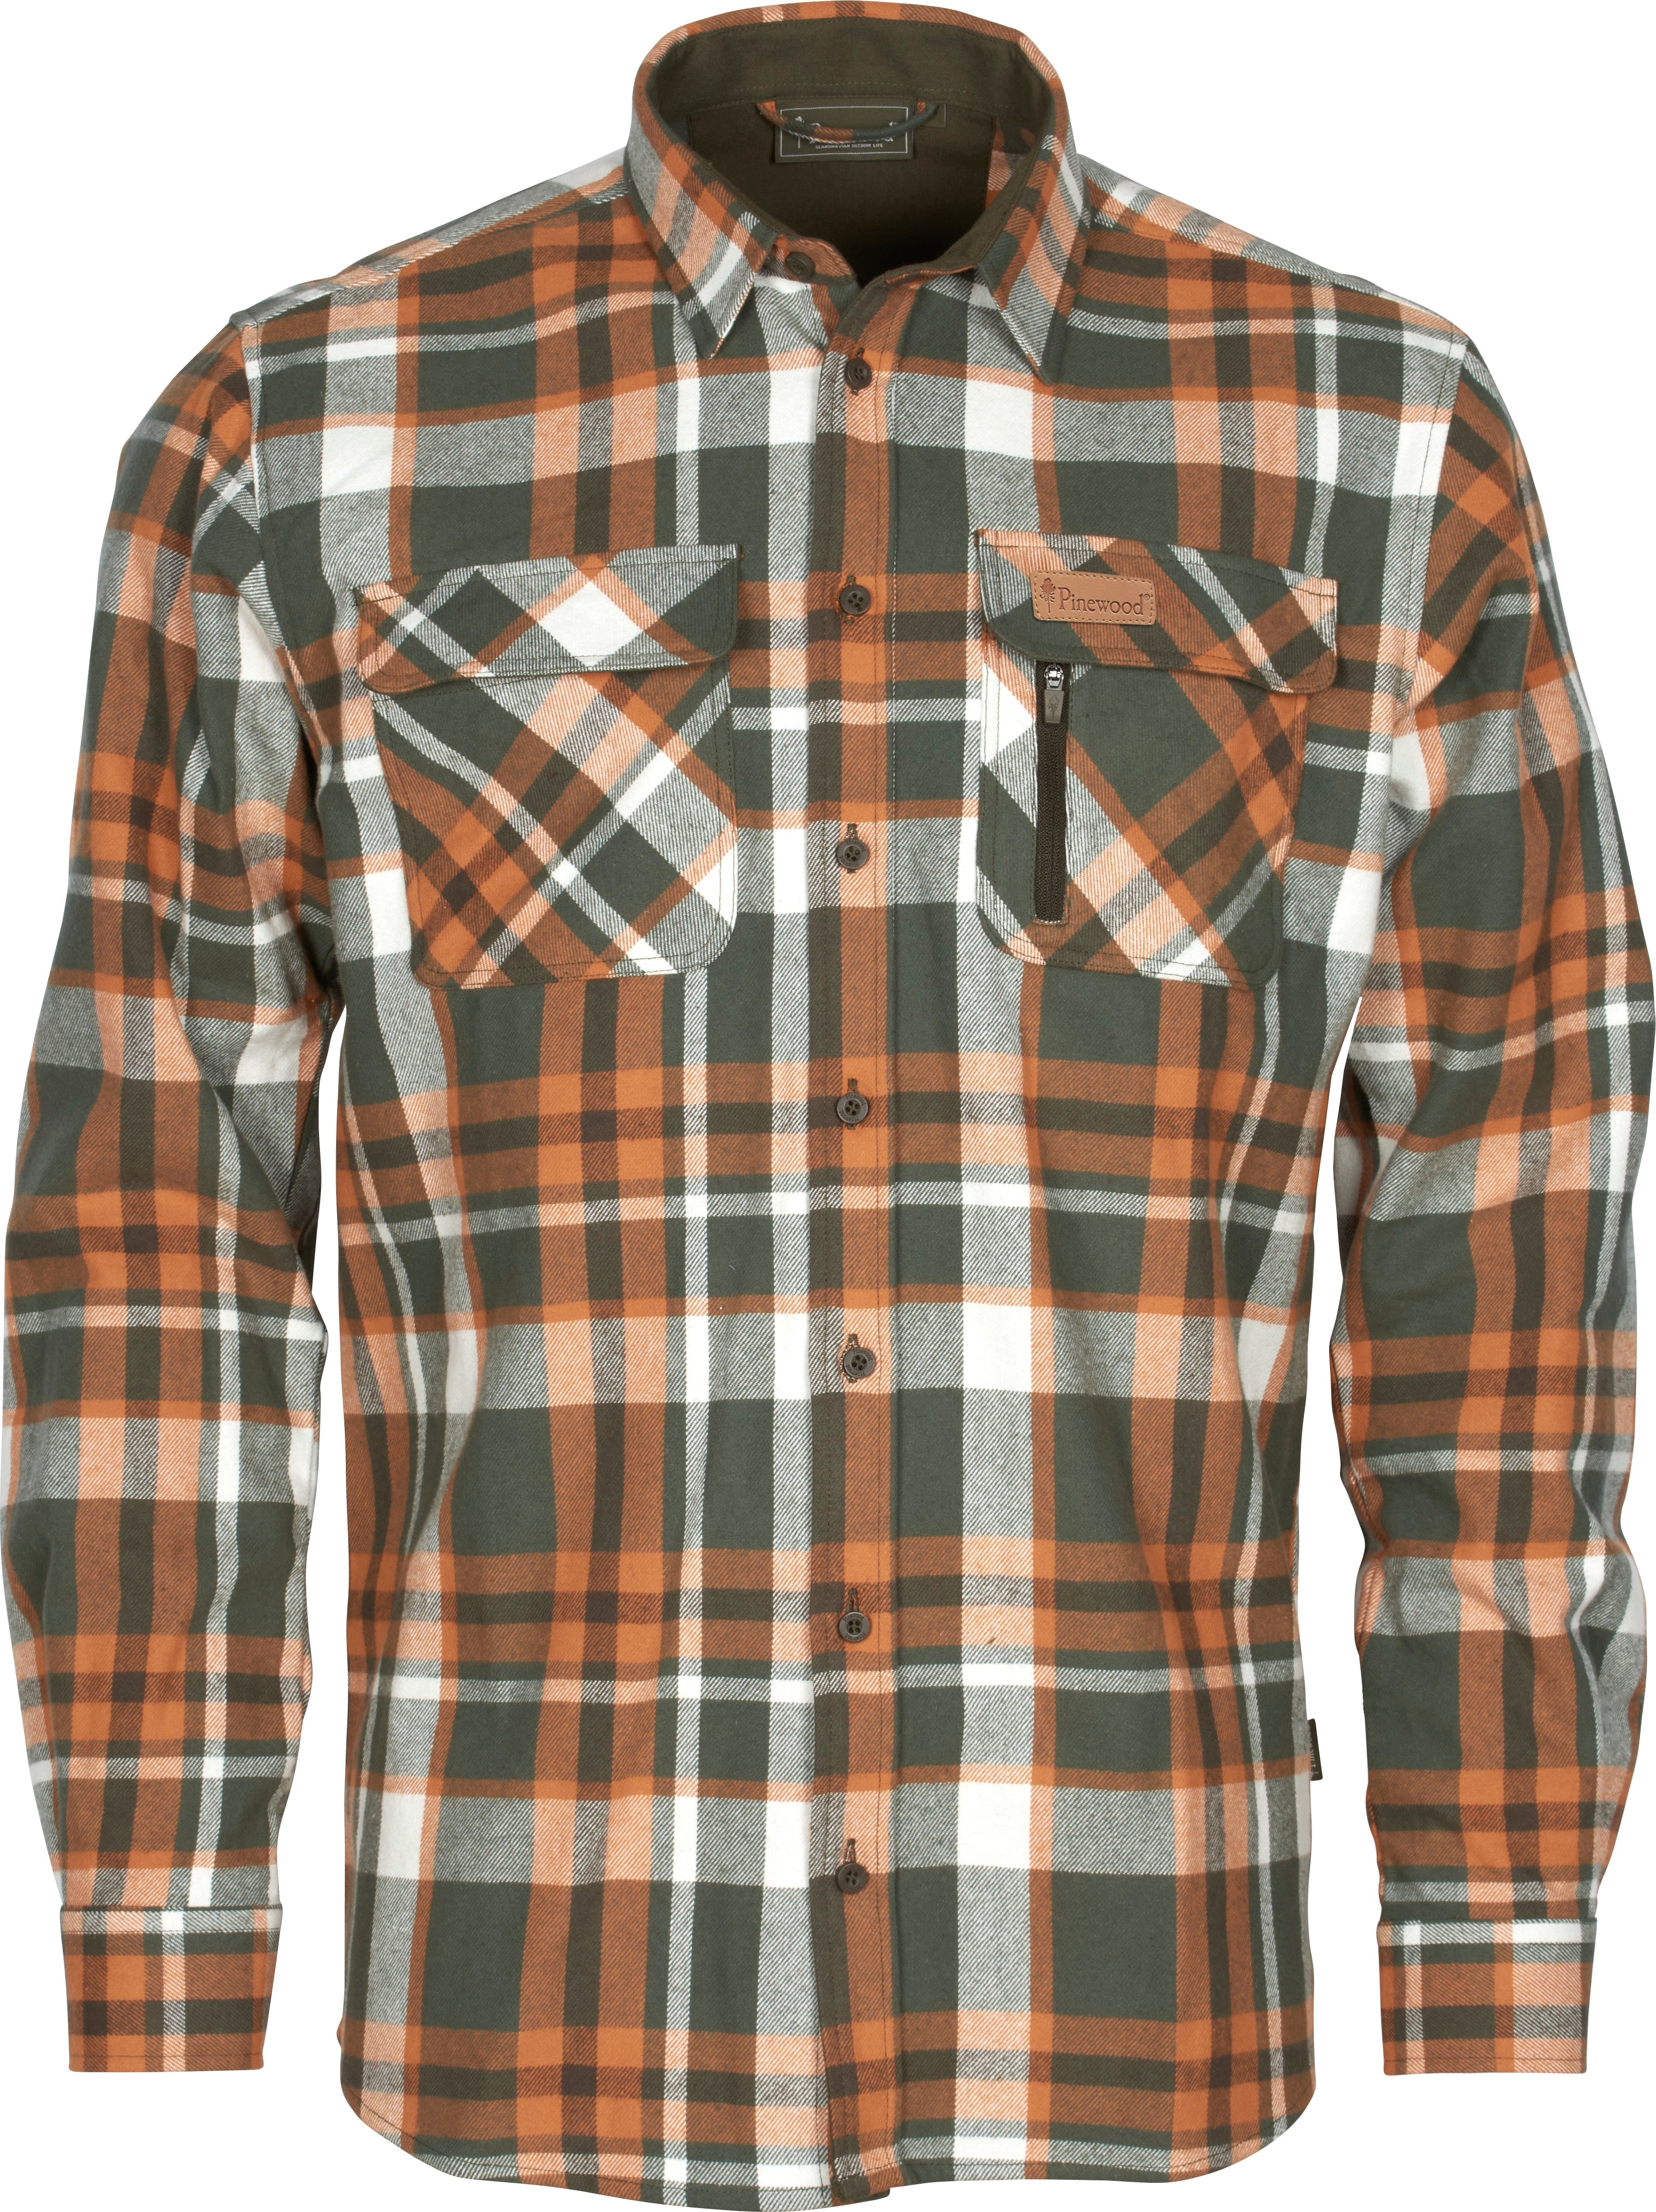 Men's Lappland Rough Flannel Shirt Green/Orange